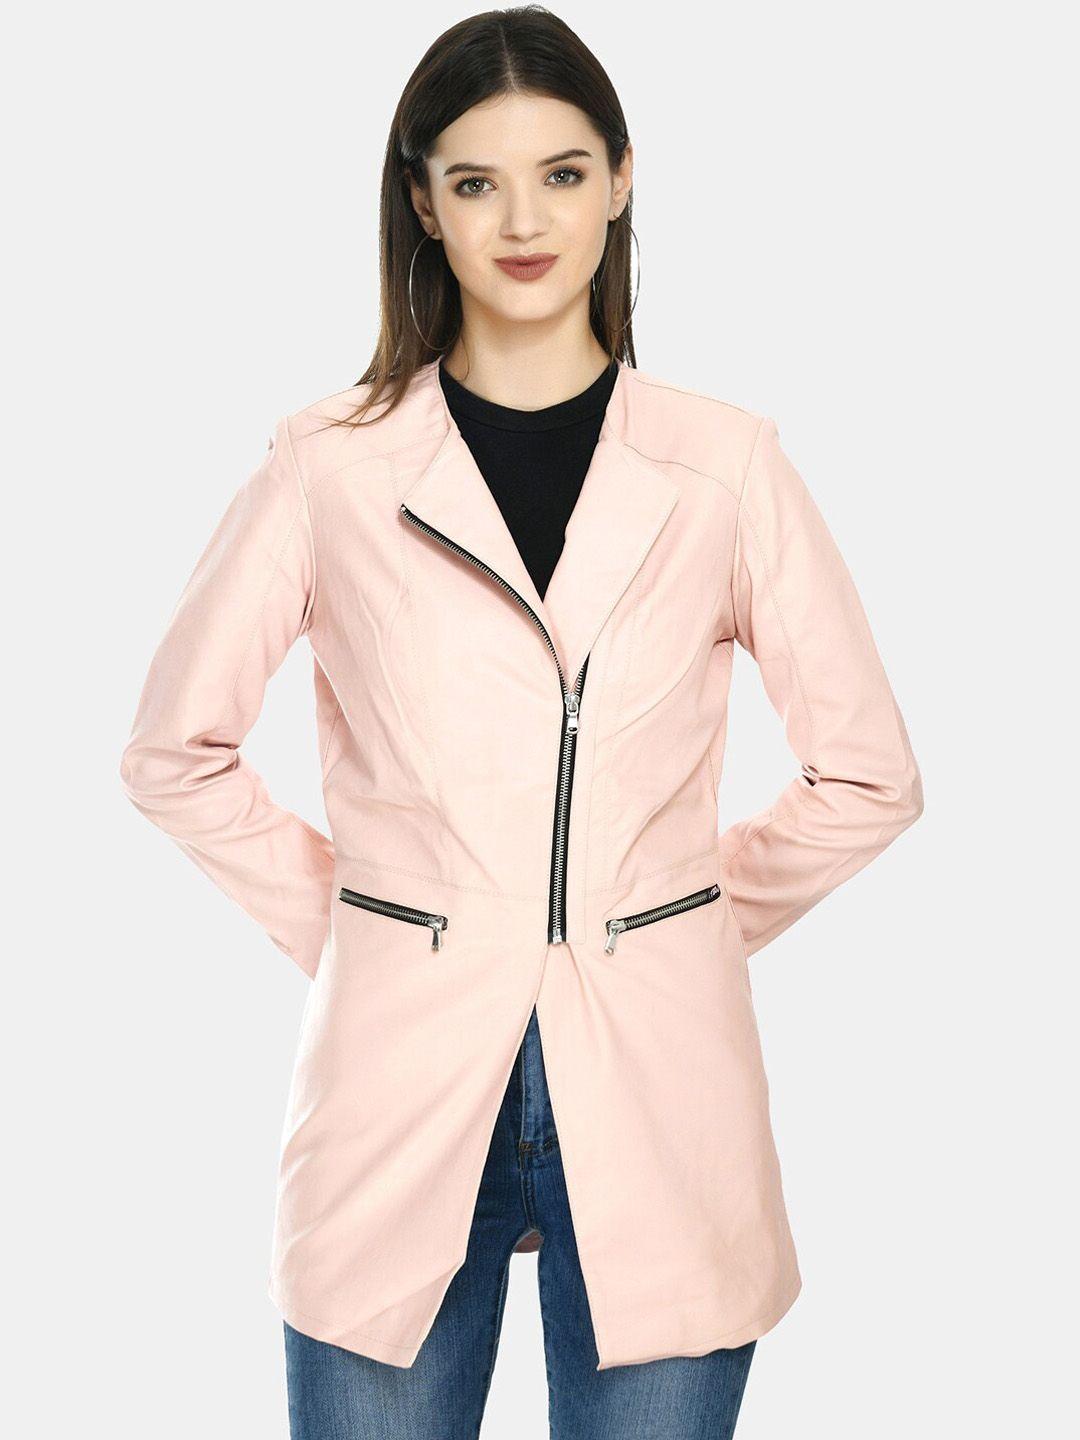 tboj-women-pink-geometric-leather-lightweight-longline-open-front-jacket